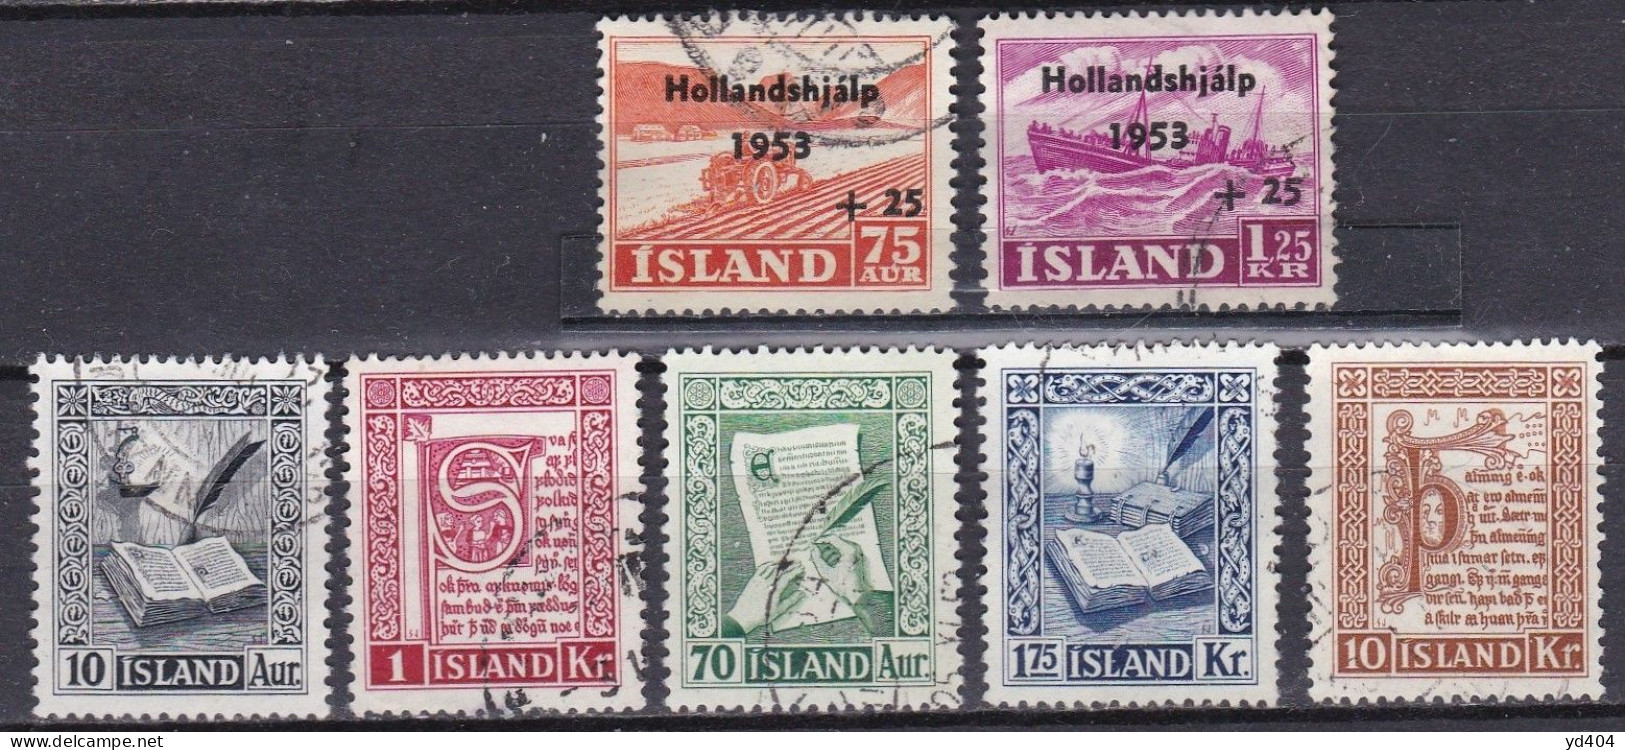 IS058 – ISLANDE – ICELAND – 1953 – FULL YEAR SET – SC # 278/82-B12/3 - USED 13,50 € - Gebraucht